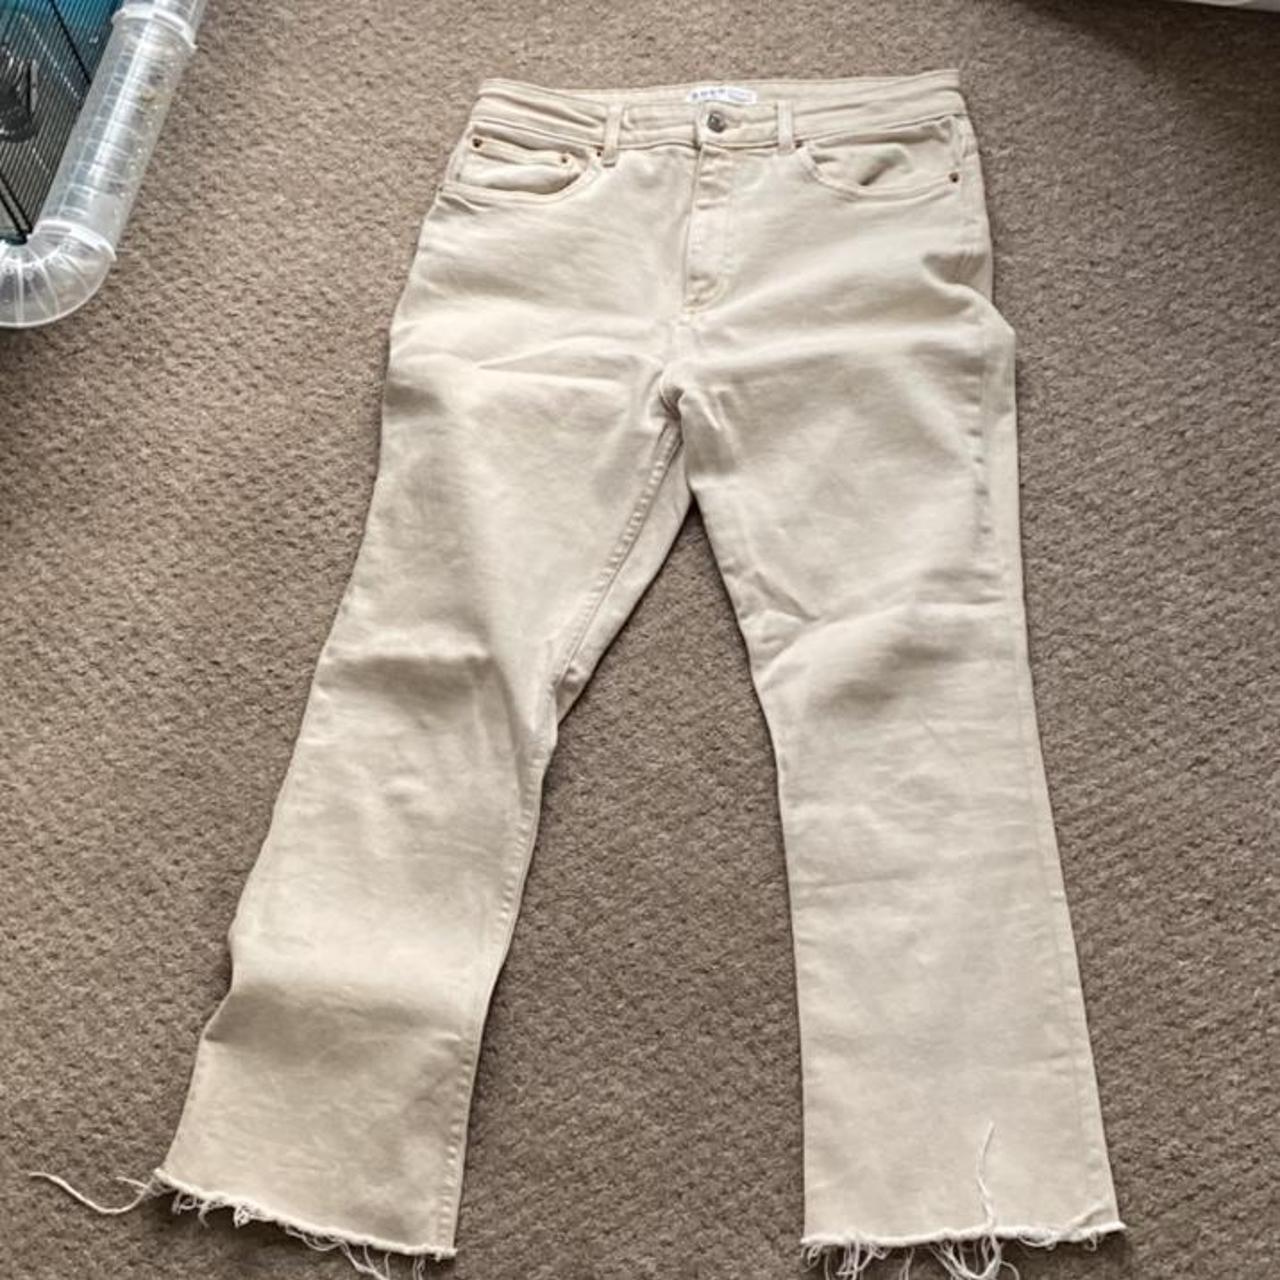 Primark beige denim jeans flared wide leg skinny y2k... - Depop